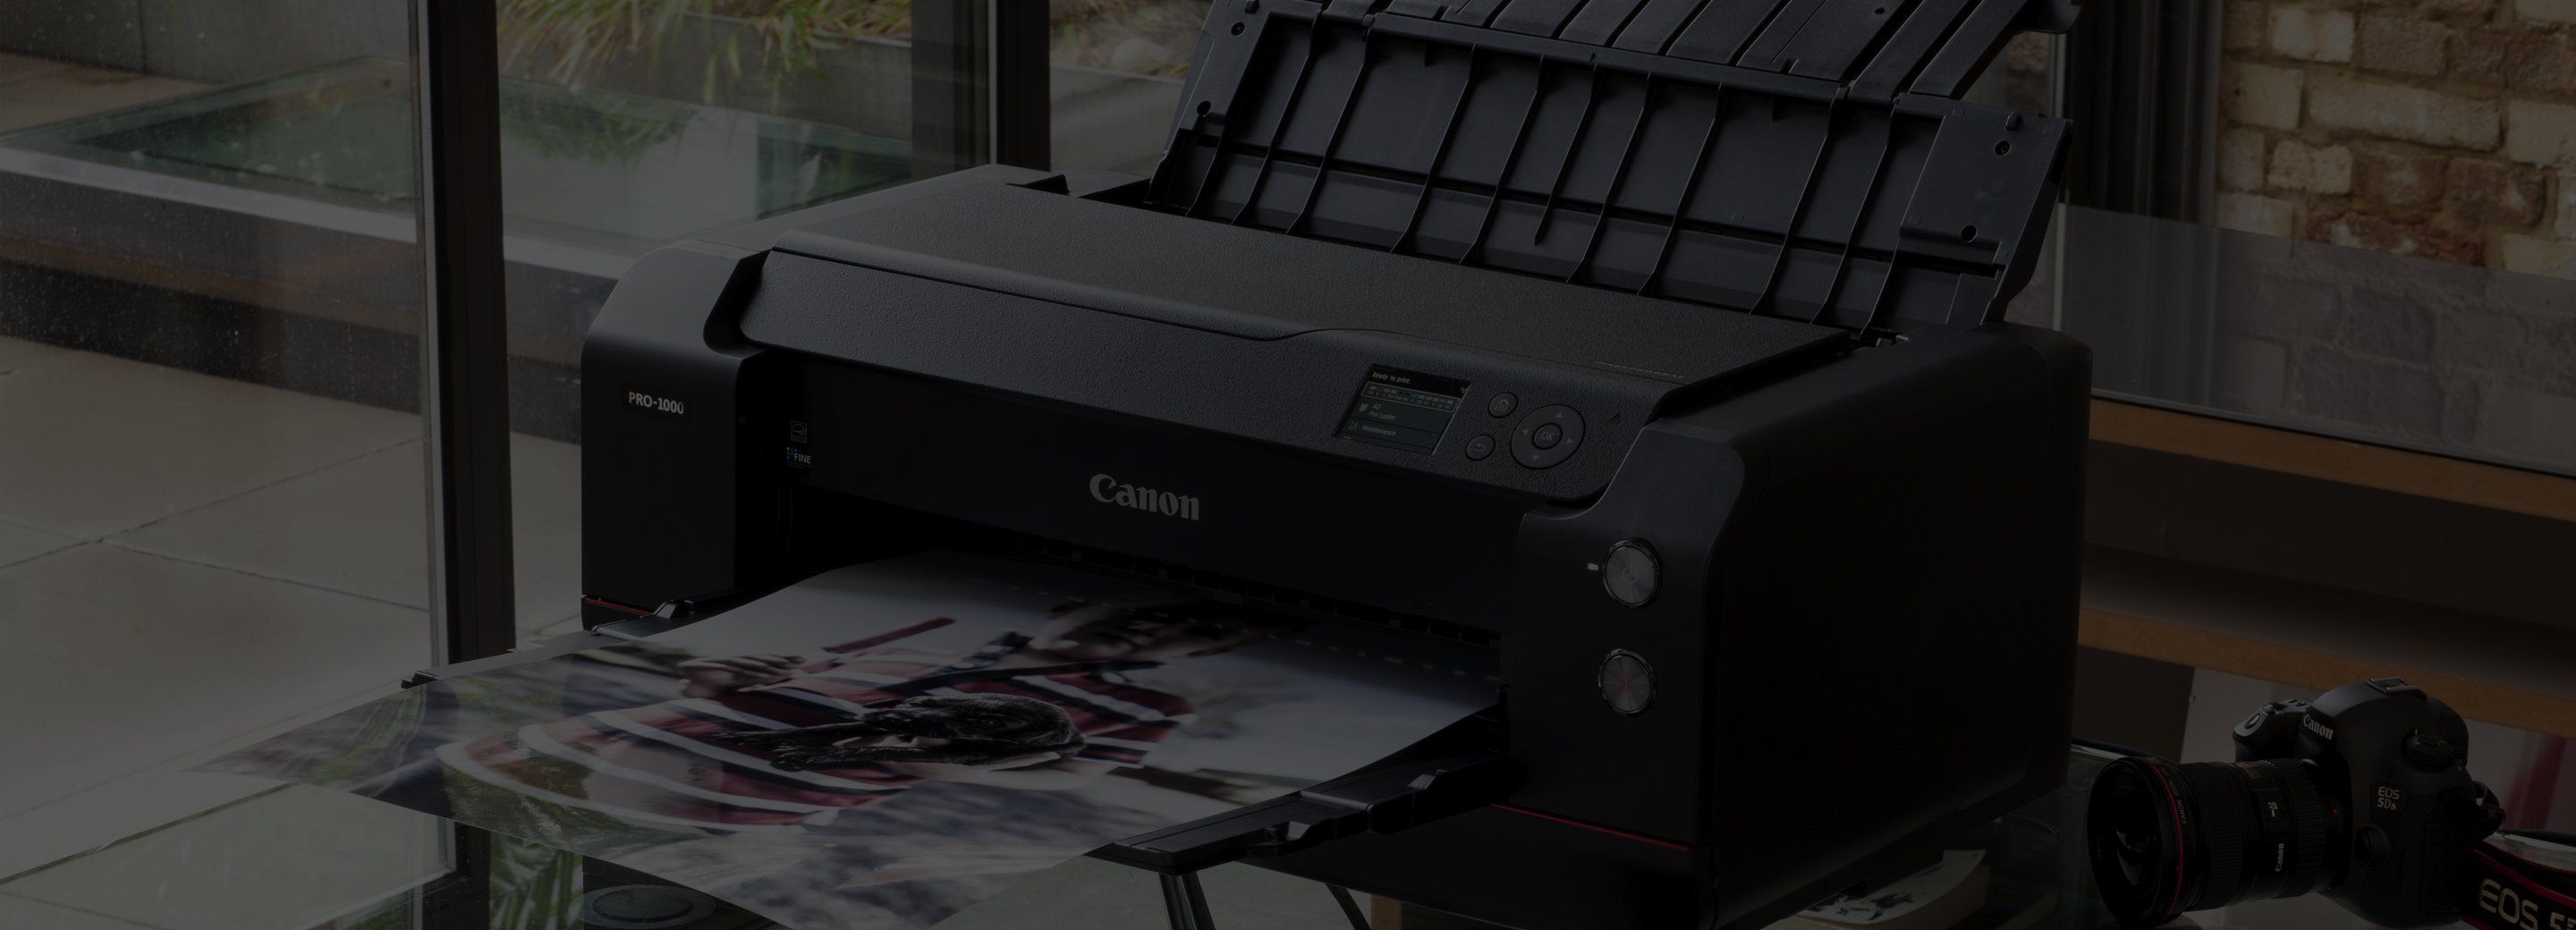 Canon Professional Photo Printers - Canon Qatar